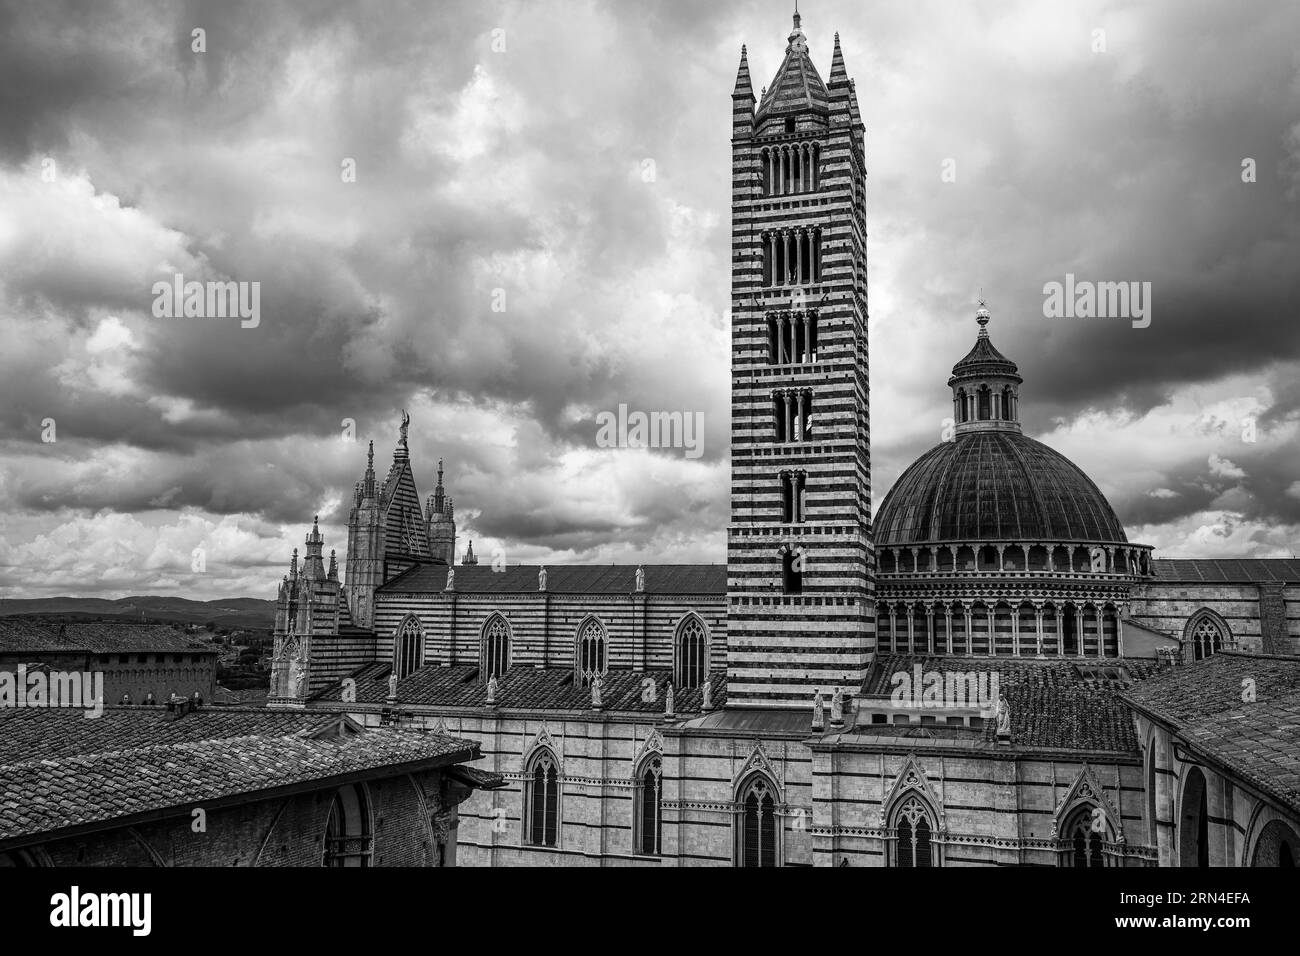 Nuages sombres sur la cathédrale de Sienne avec sa façade en marbre rayé noir et blanc, photo noir et blanc, Sienne, Toscane, Italie Banque D'Images